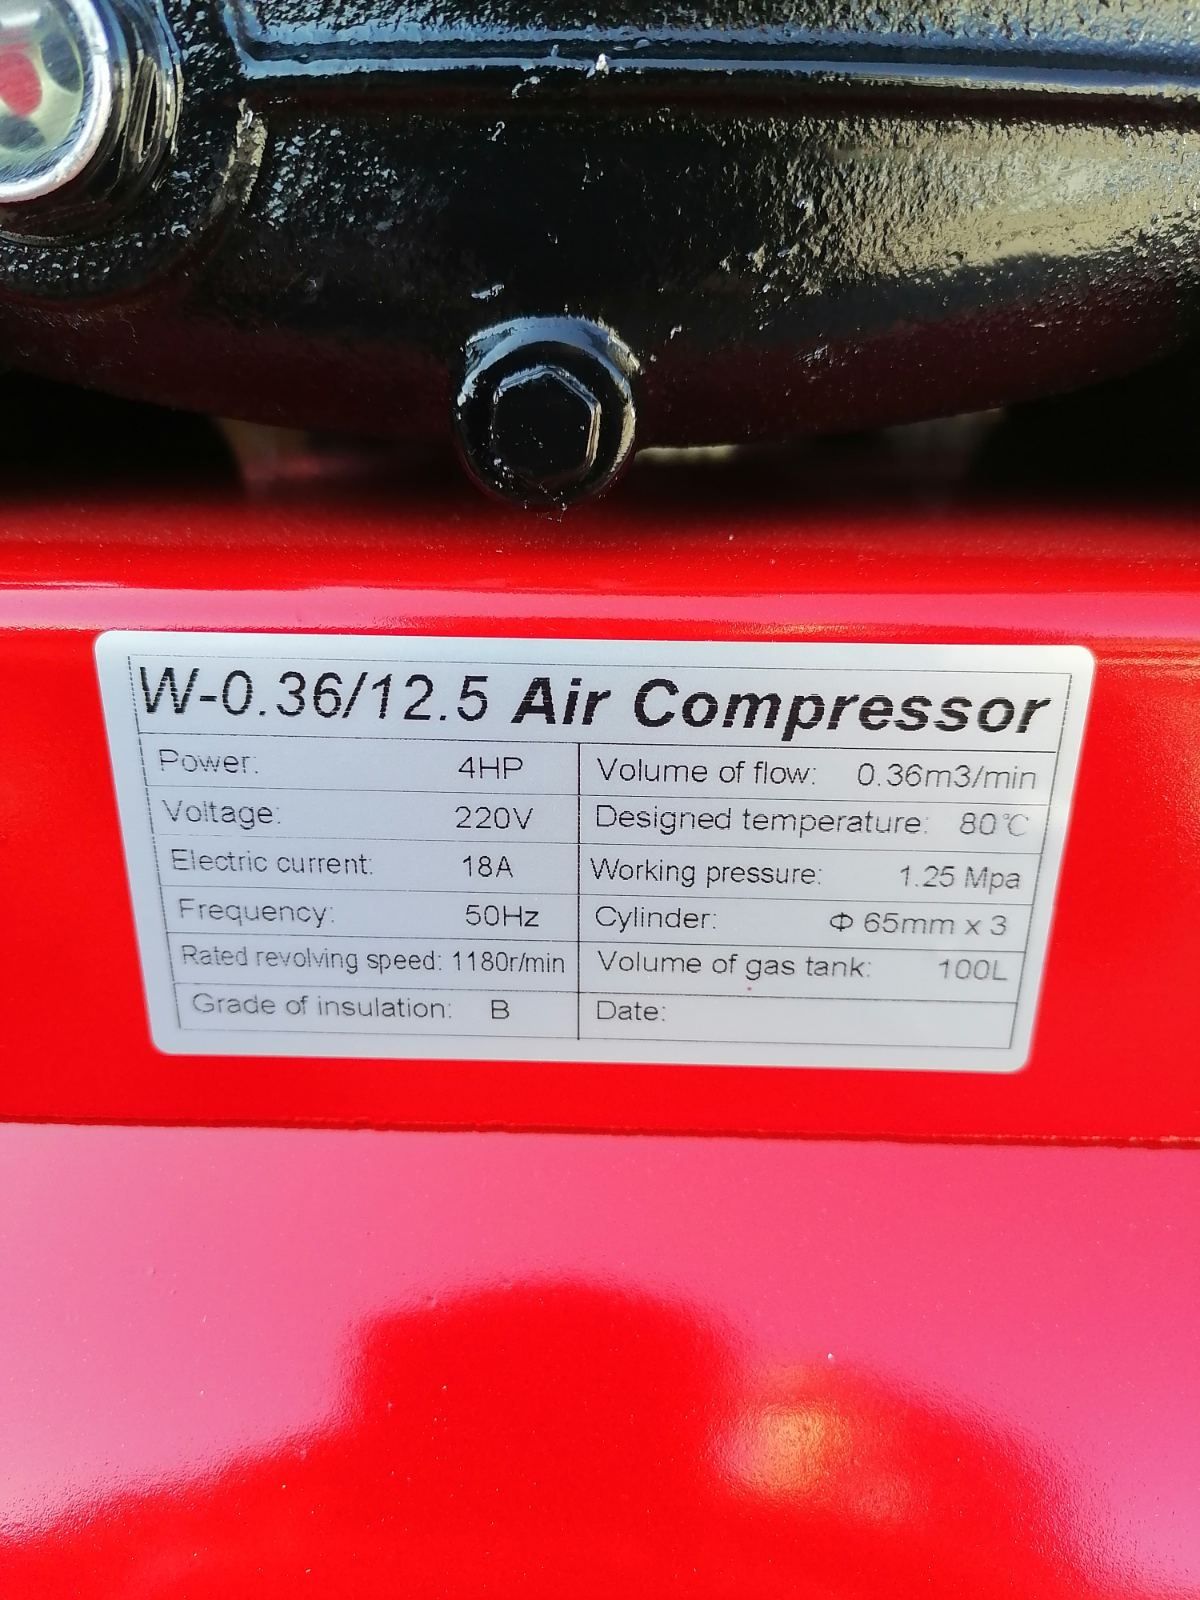 Компресор за въздух Vion Italy compressor 100 литра